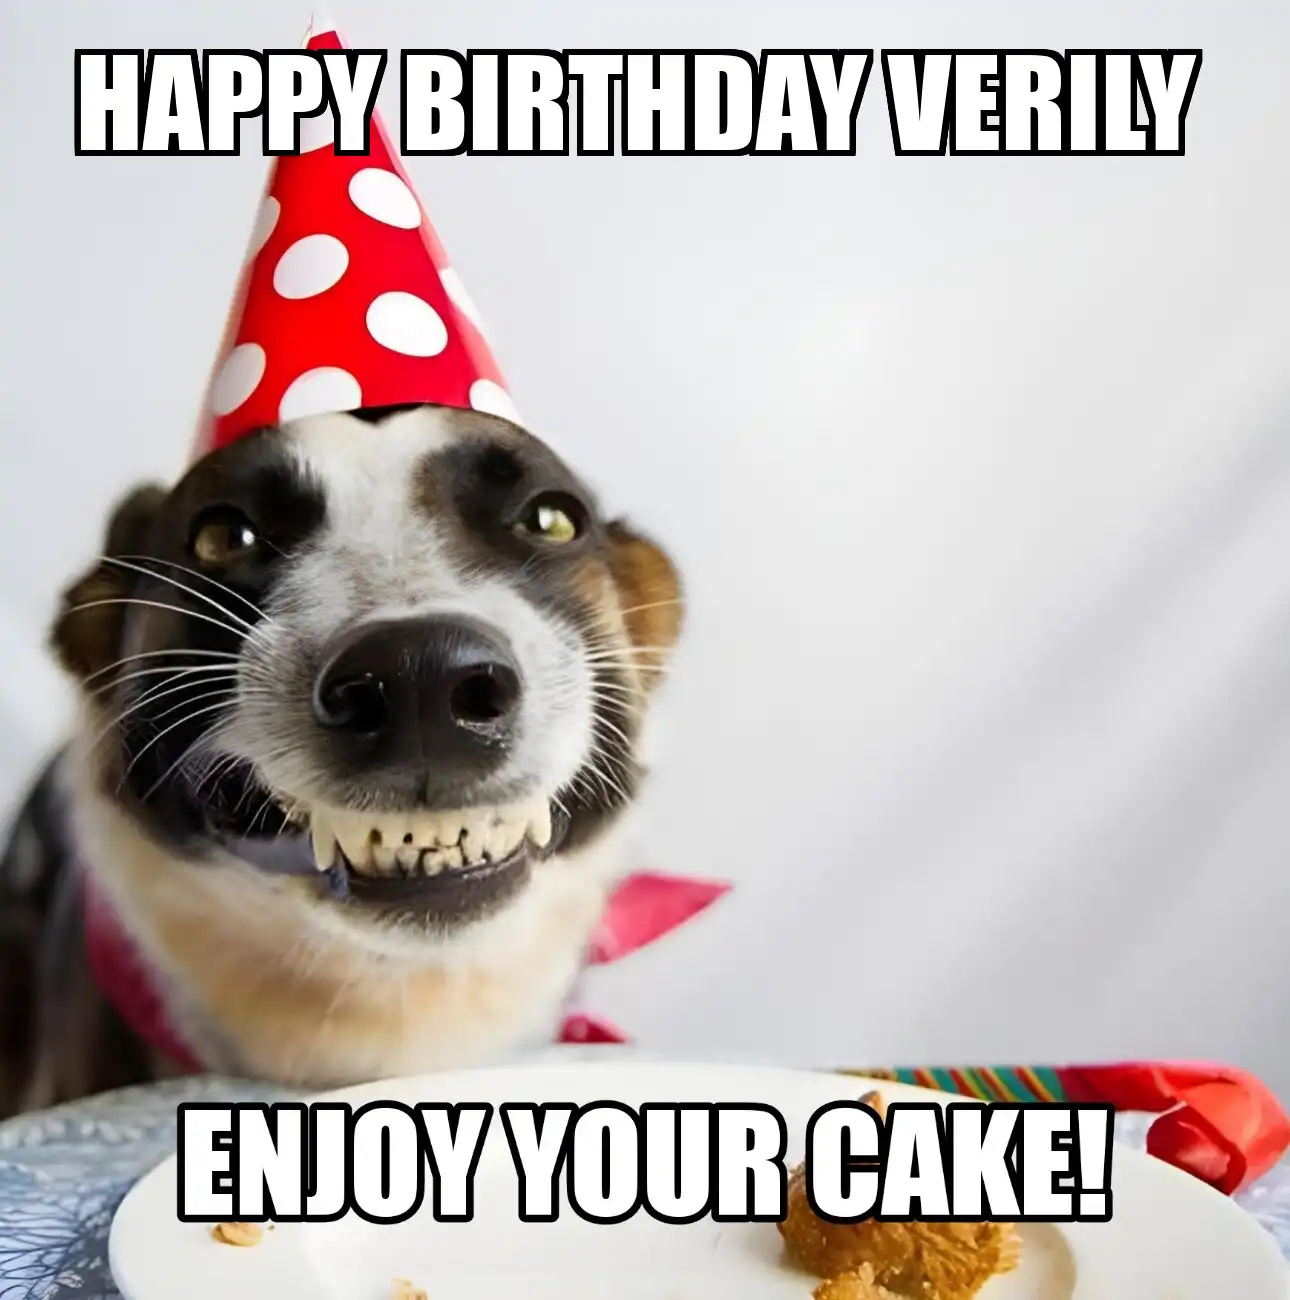 Happy Birthday Verily Enjoy Your Cake Dog Meme